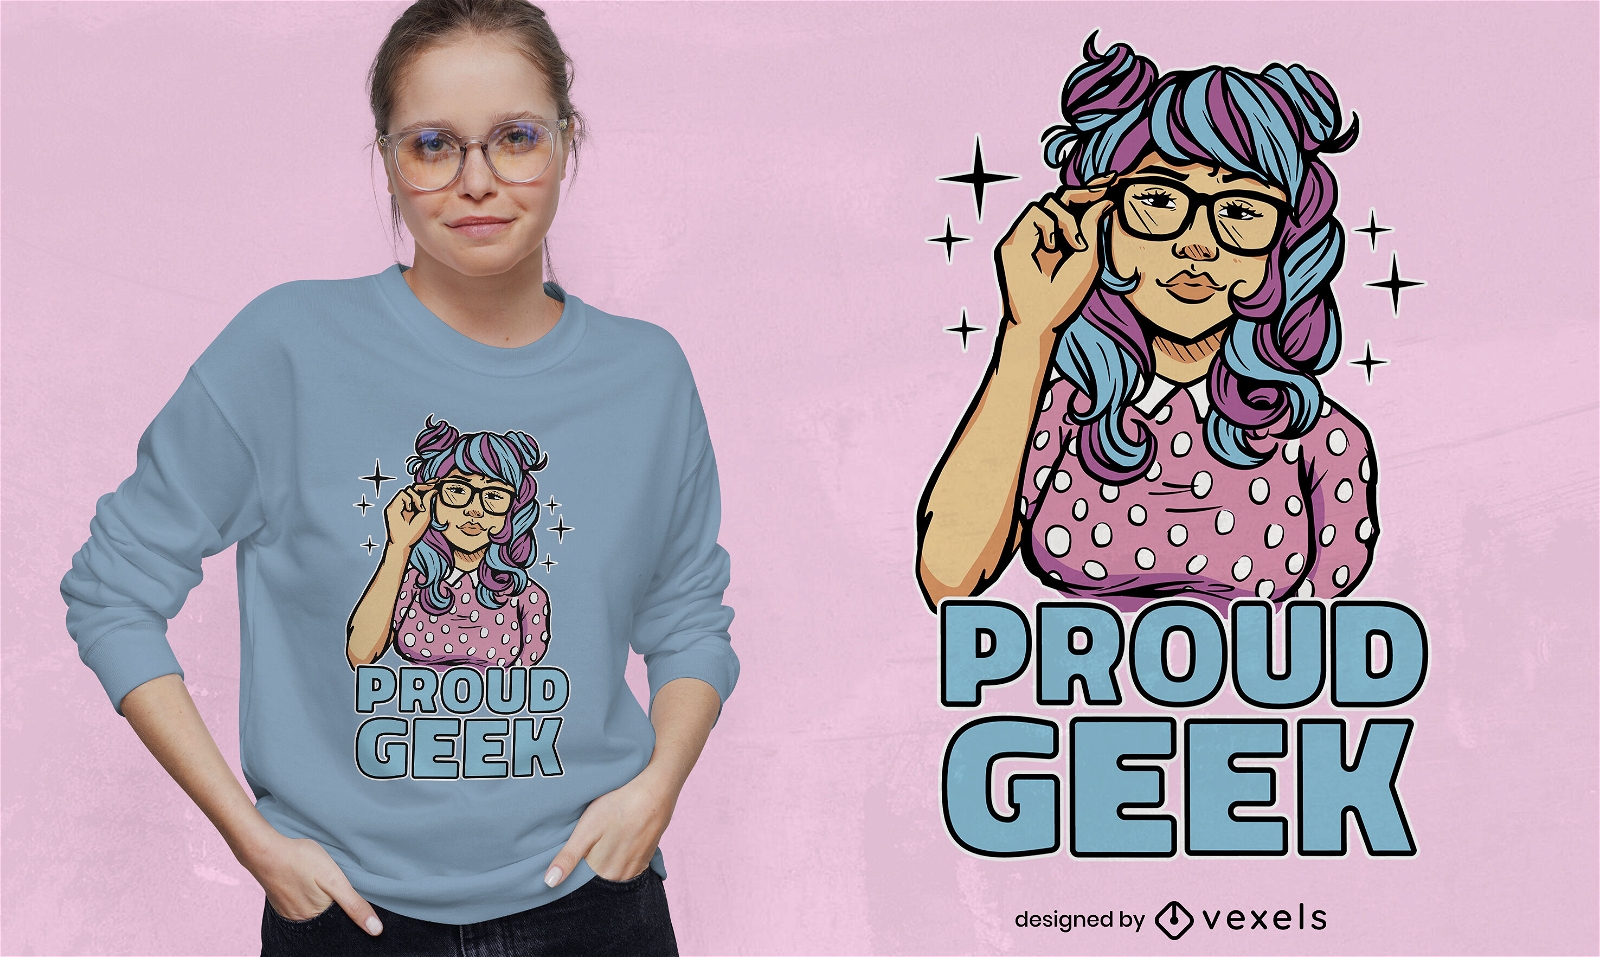 Proud geek girl t-shirt design